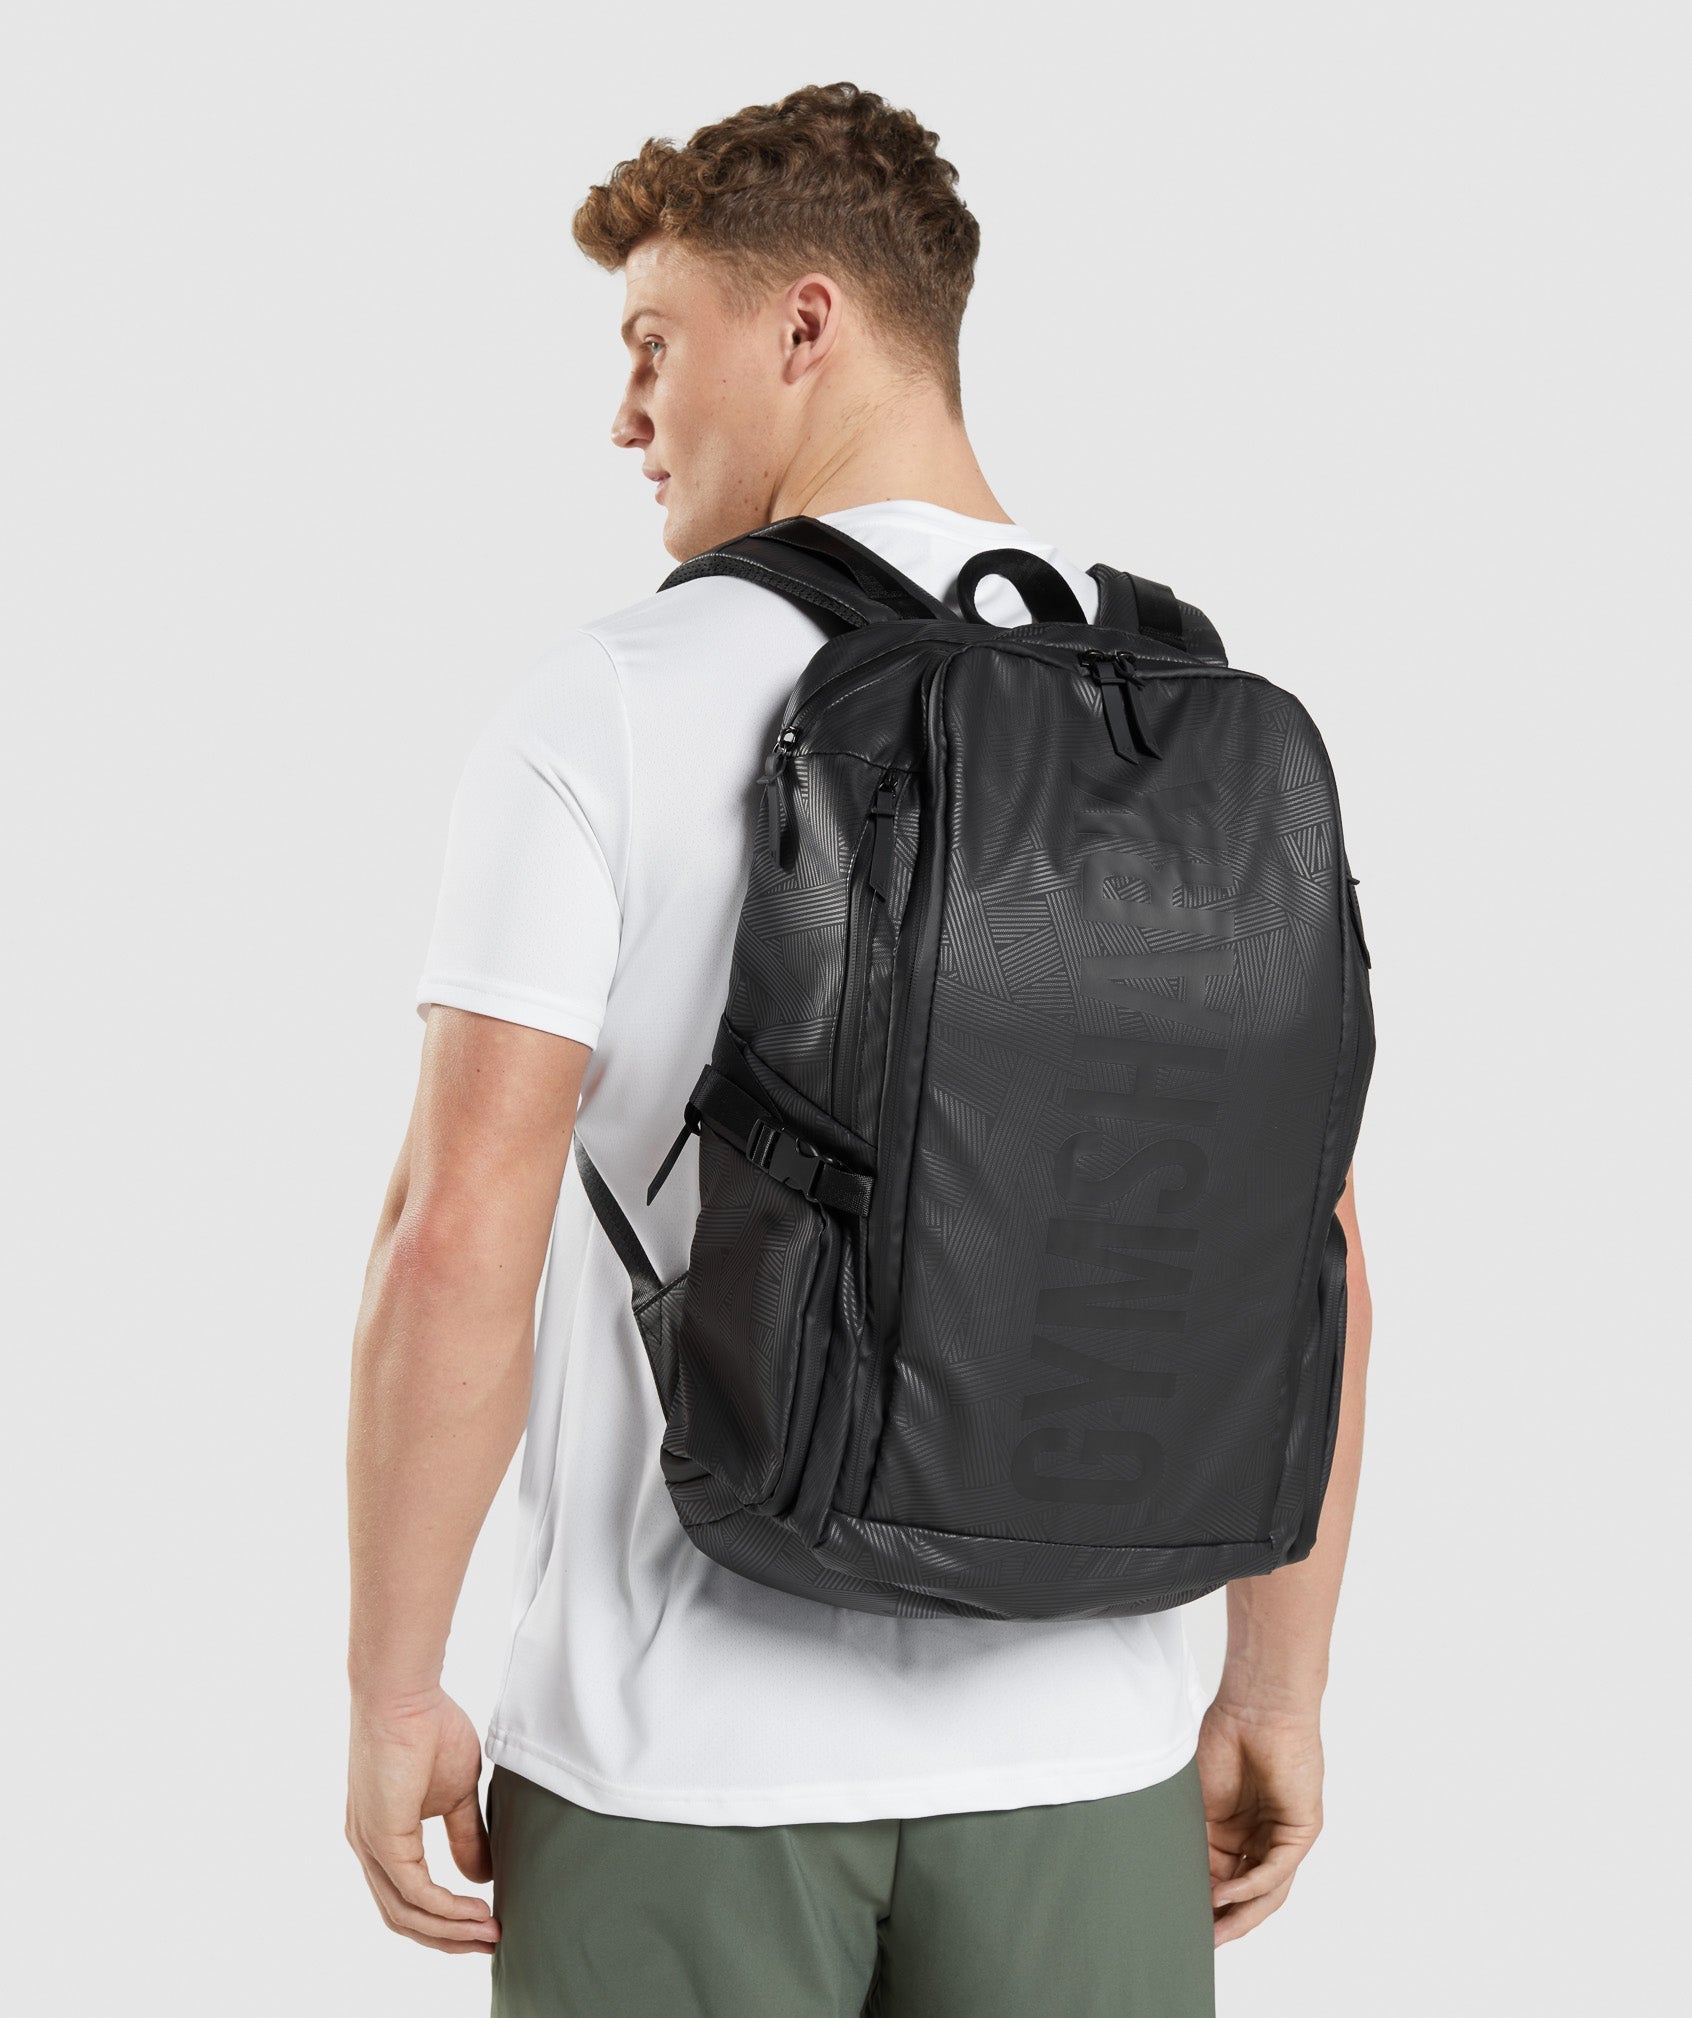 X-Series 0.3 Backpack in Black Print - view 5